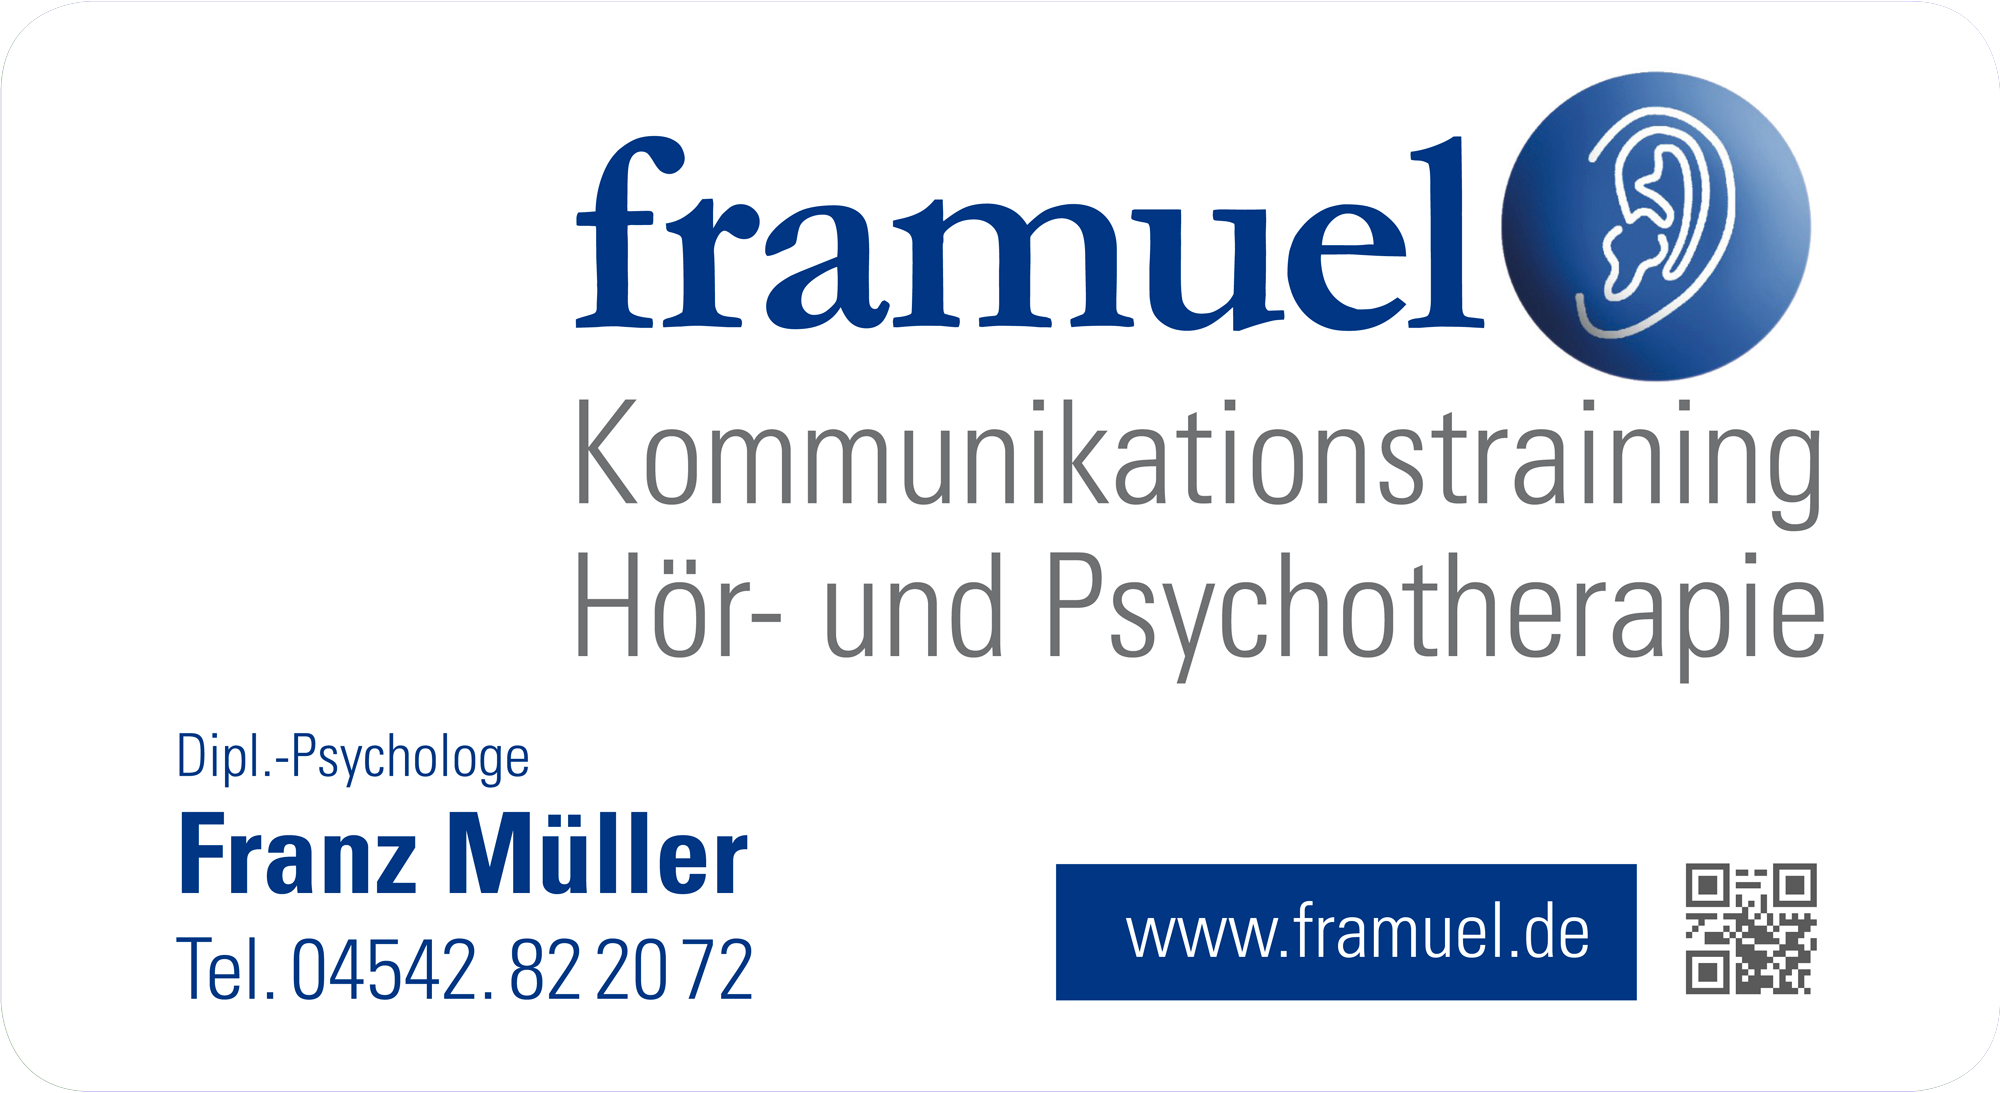 Franz Müller - Kommunikationstraining - Hörtherapie - Psychotherapie